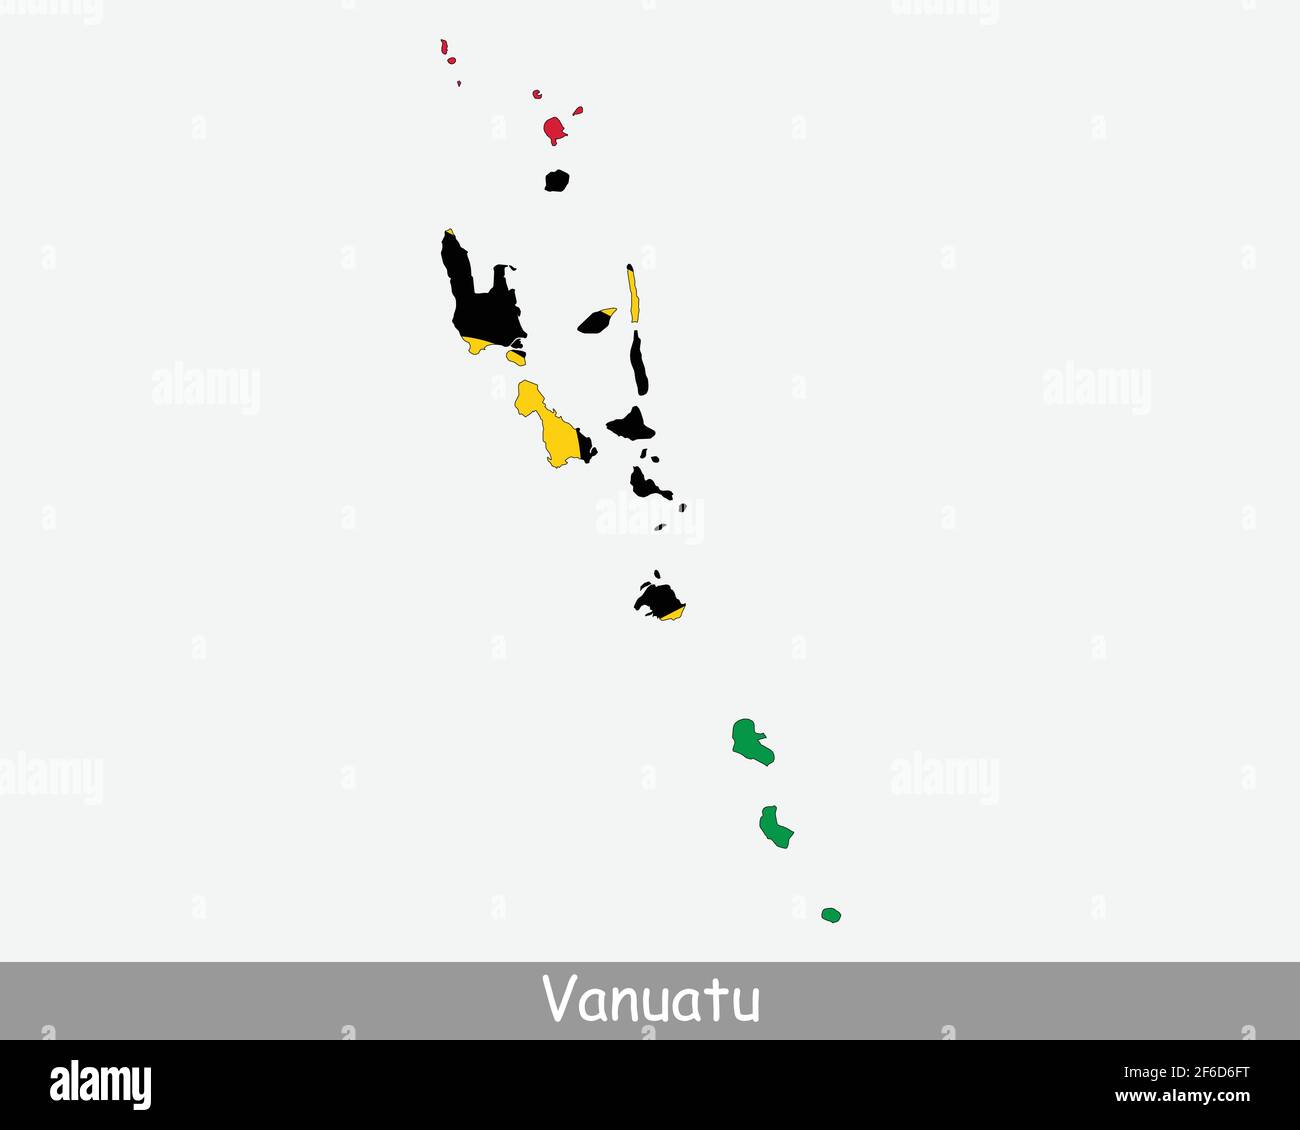 Vanuatu Mappa Bandiera. Mappa della Repubblica di Vanuatu con la bandiera nazionale Vanuatuan isolata su sfondo bianco. Illustrazione vettoriale. Illustrazione Vettoriale